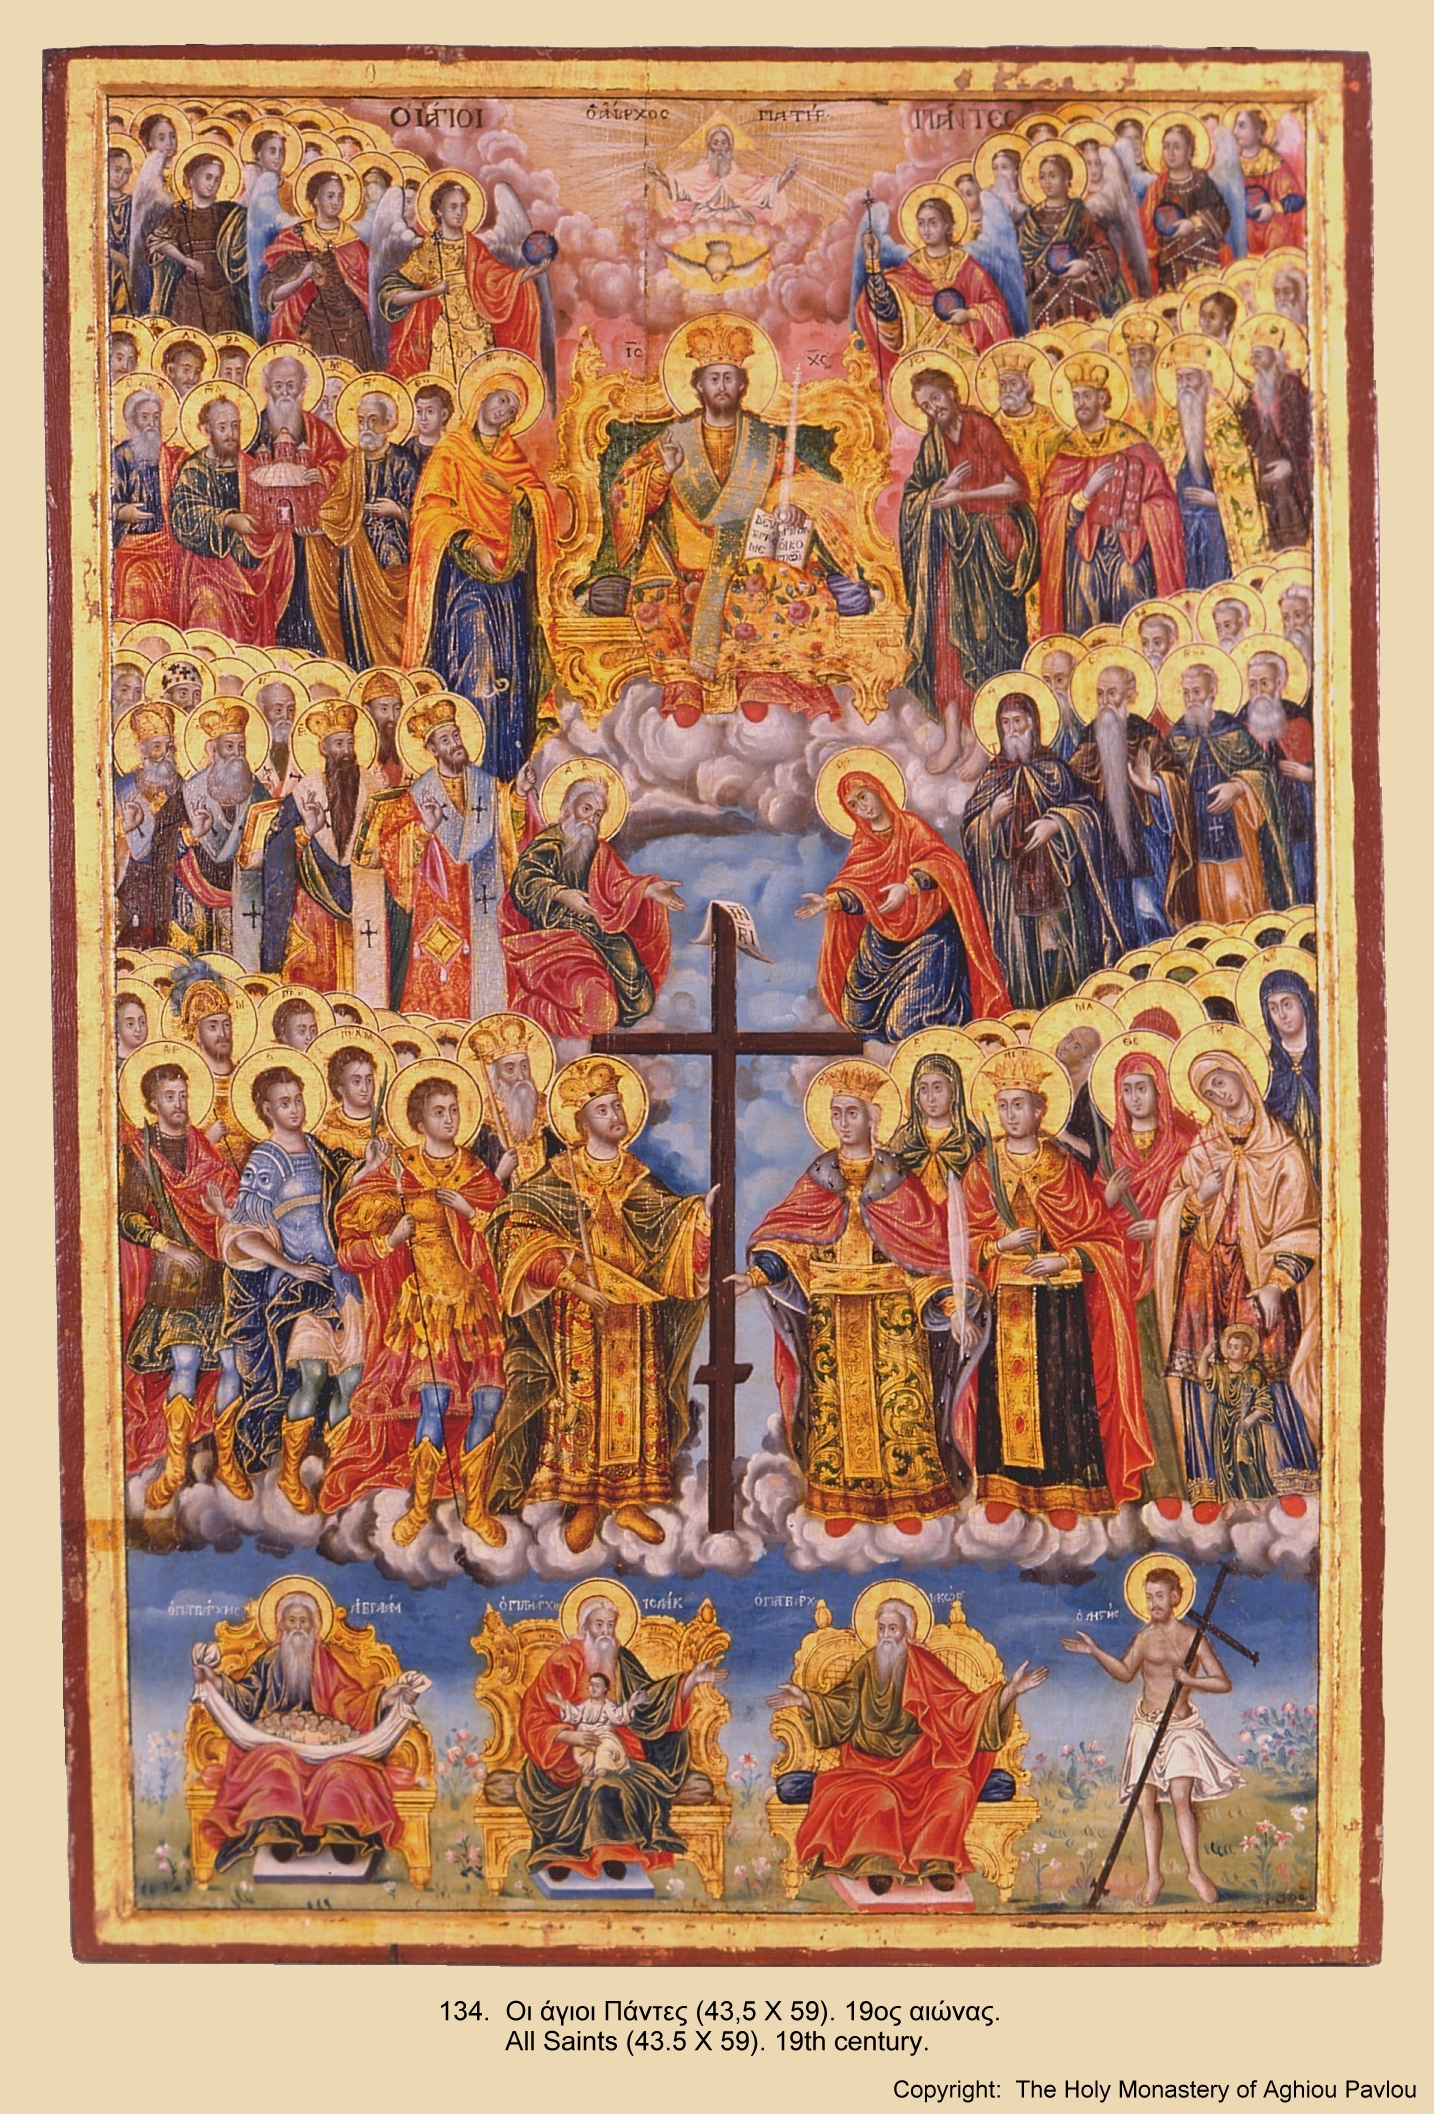 St русская. Икона всех святых Афон. Икона всех святых 16 век. Икона всем святым от века Богу благоугодившим.